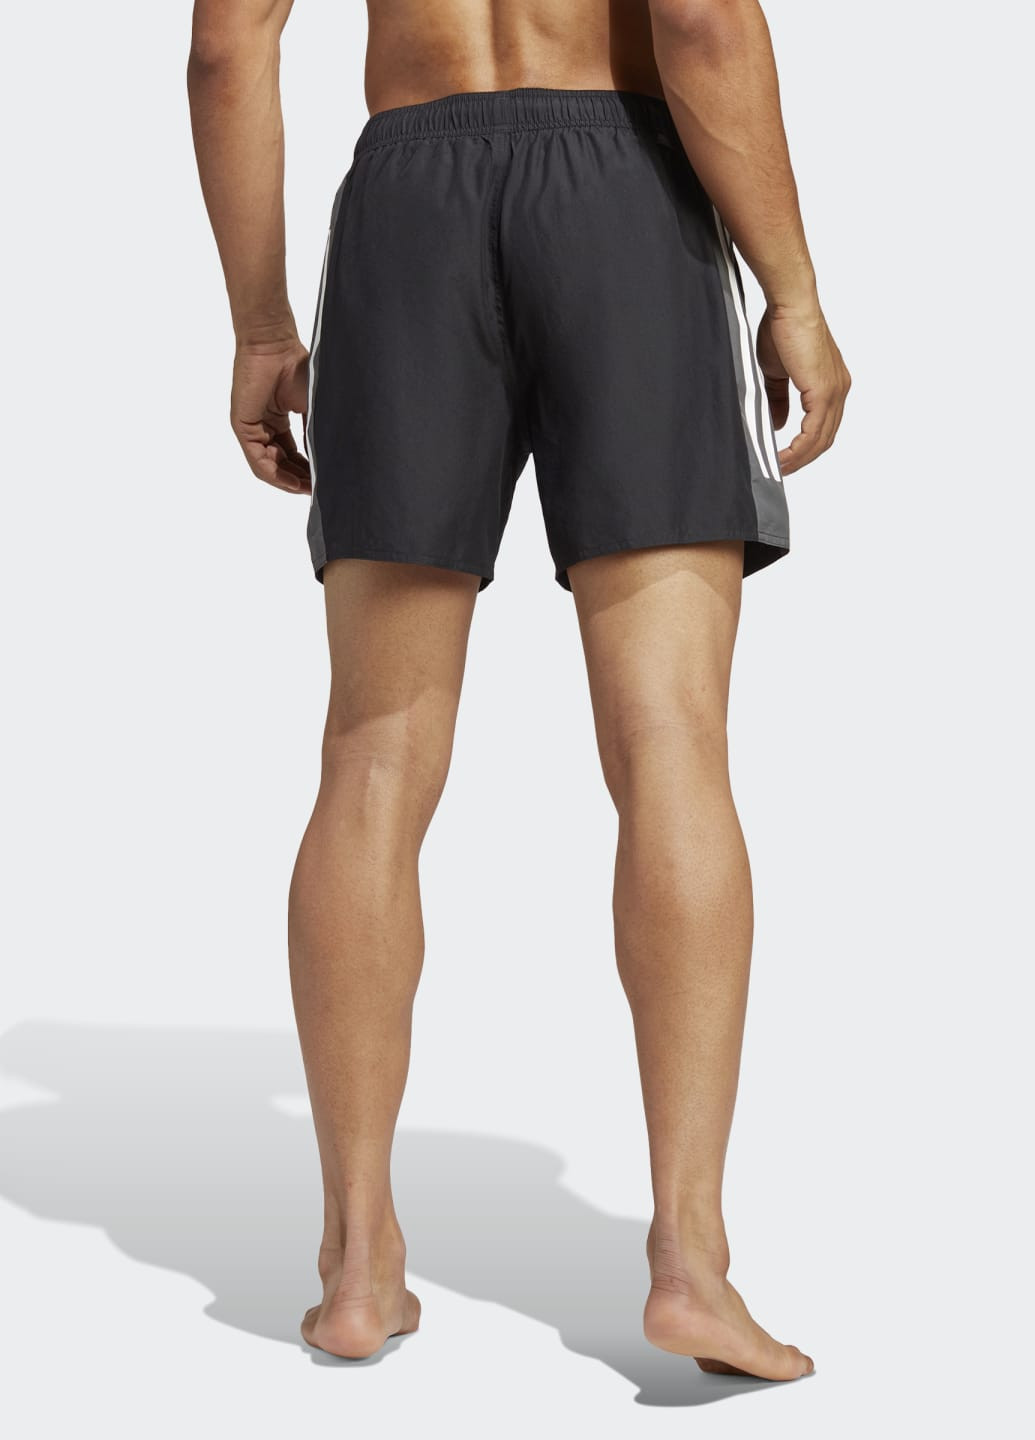 Мужские черные спортивные шорты для плавания short length colorblock 3-stripes adidas